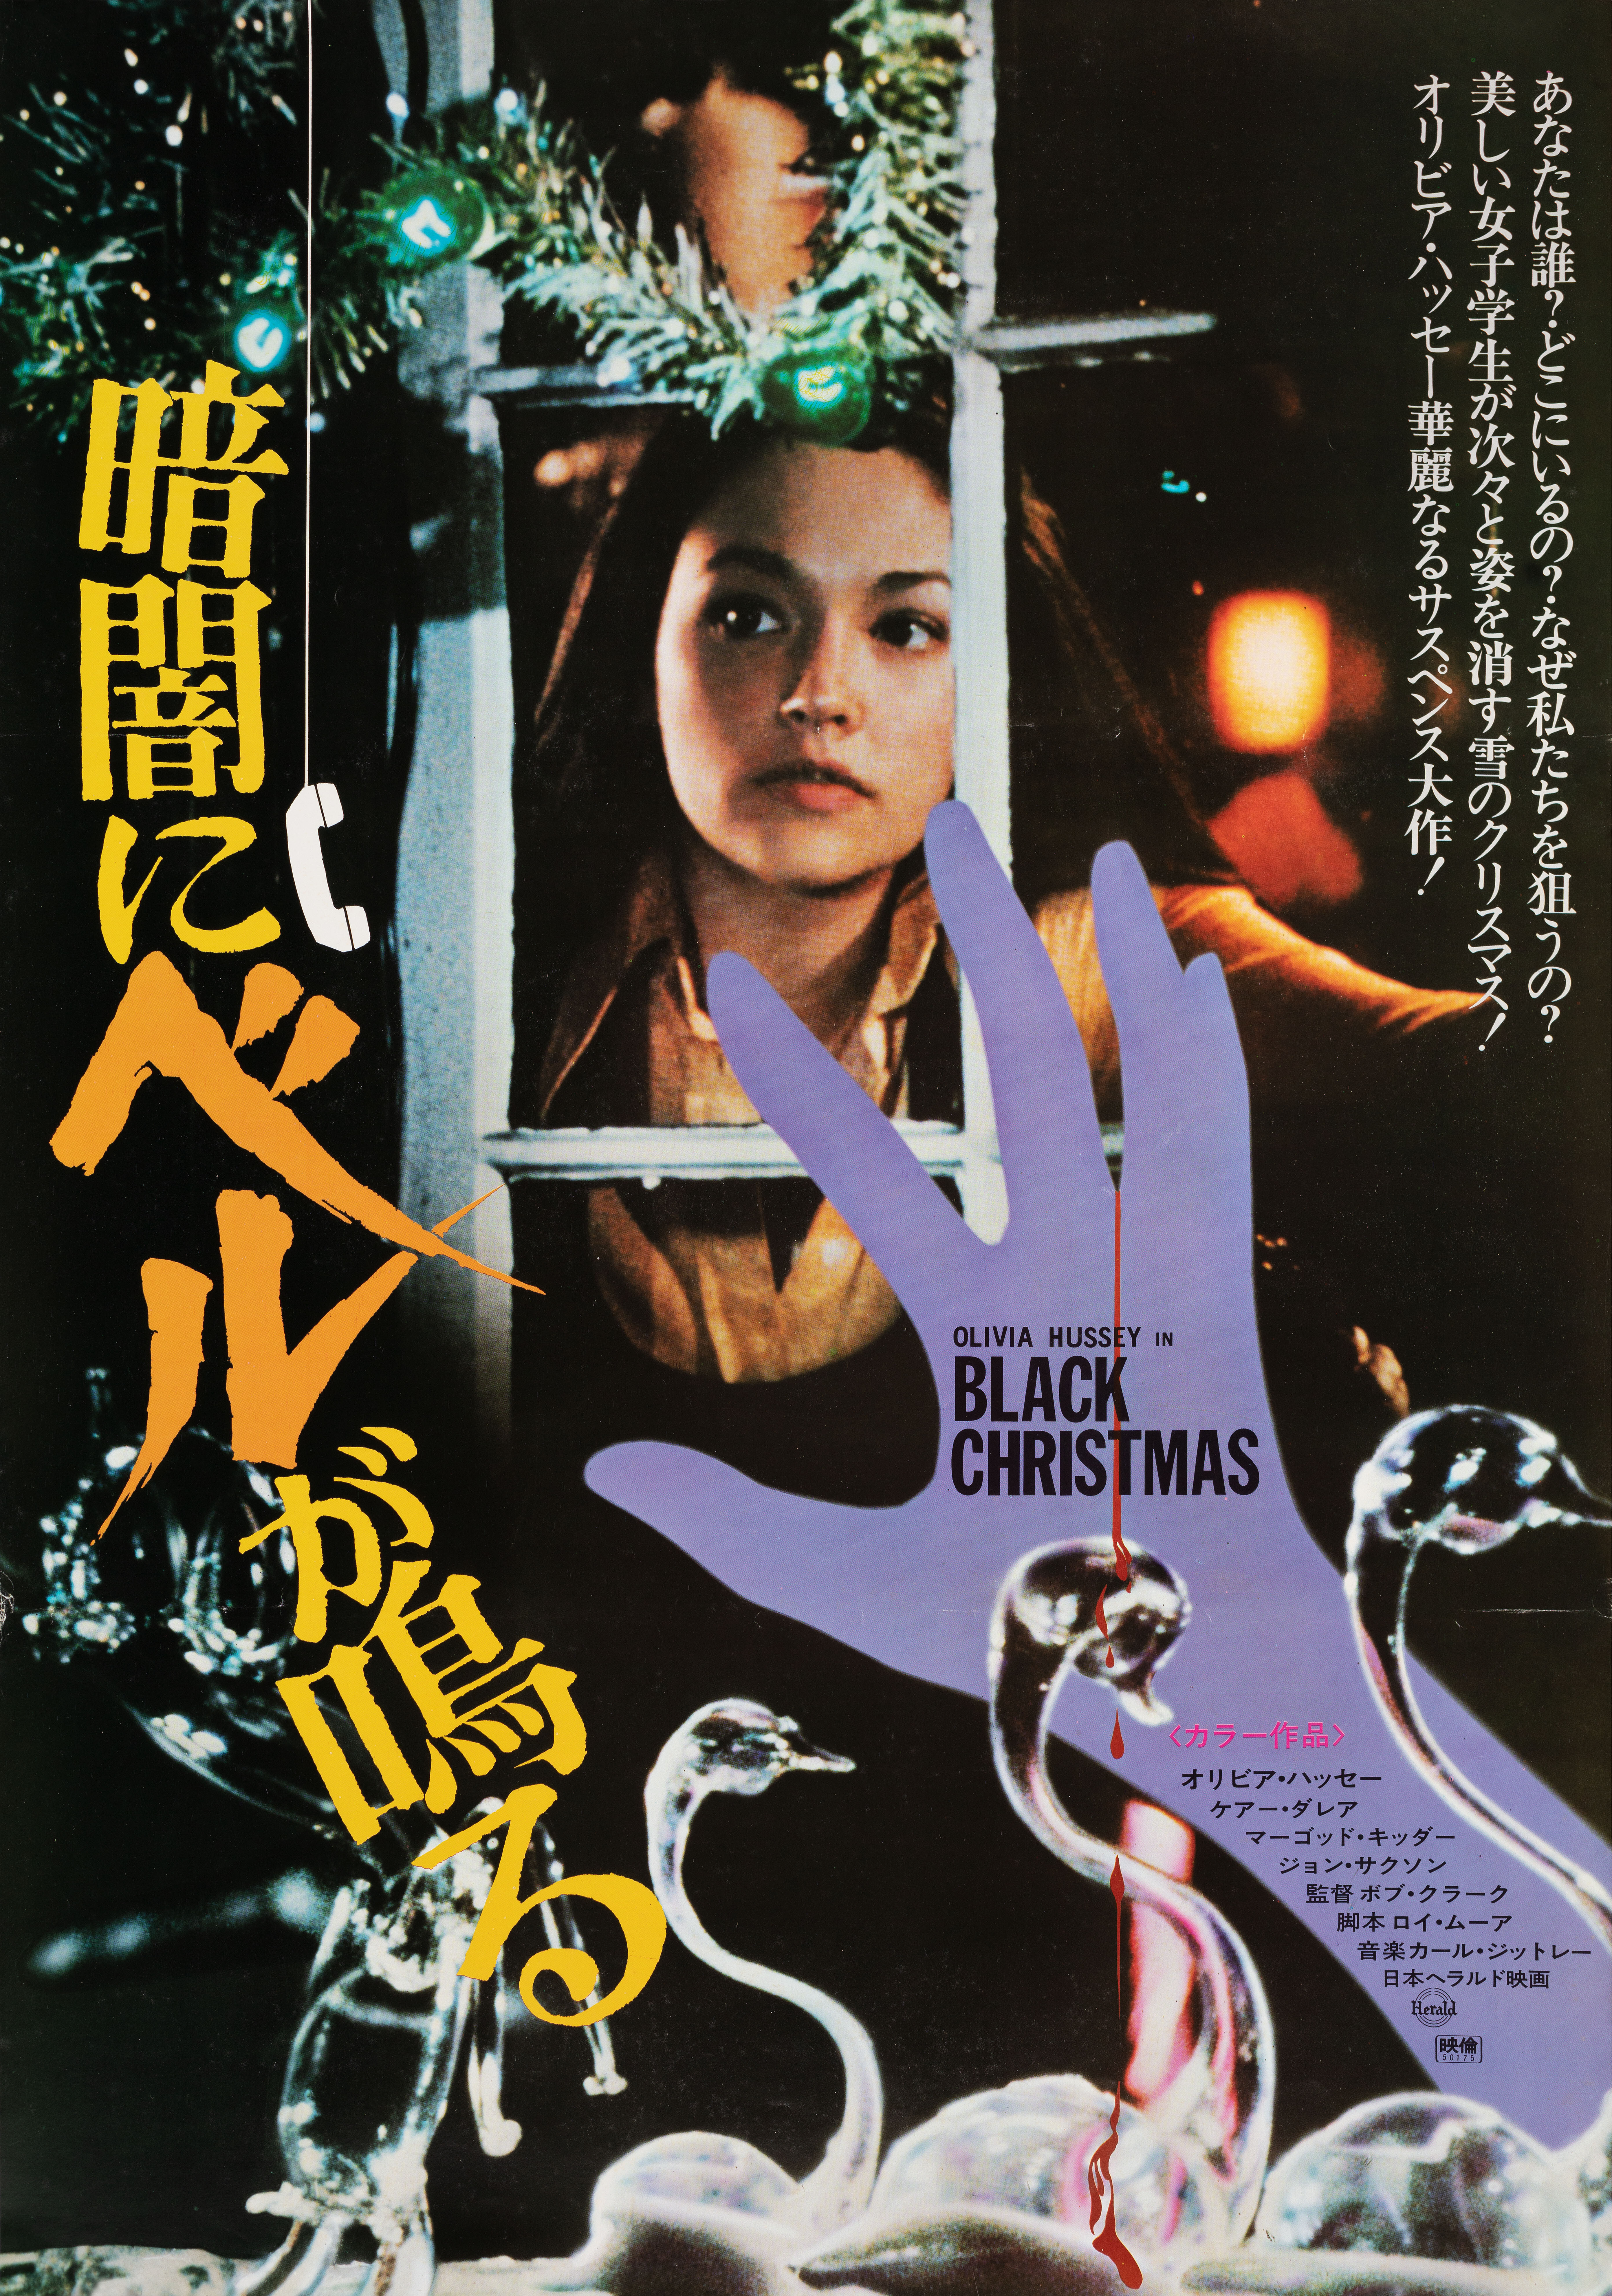 Черное Рождество (Black Christmas, 1974), режиссёр Боб Кларк, японский постер к фильму (ужасы, 1975 год)